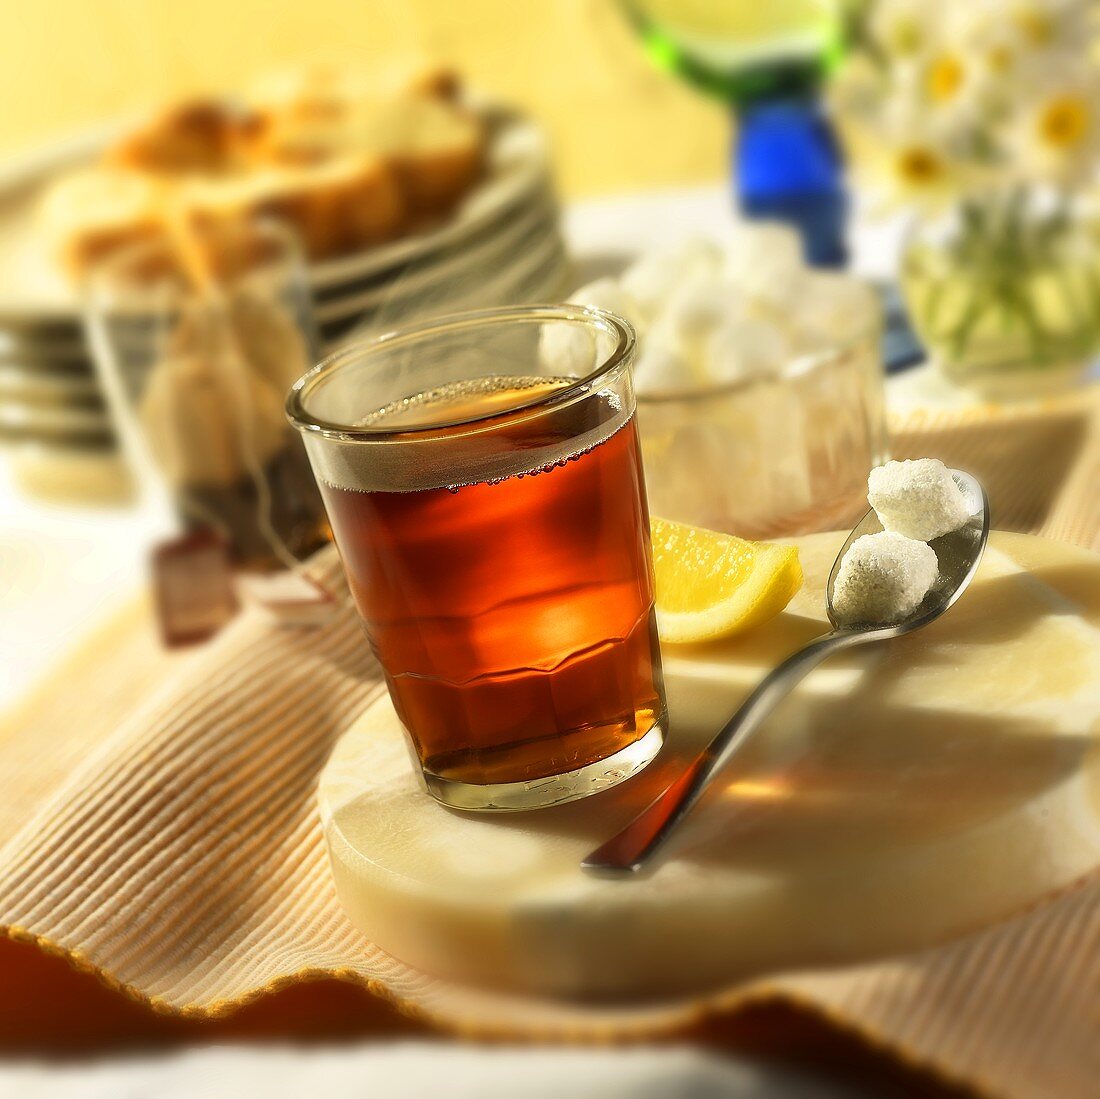 Heisser Tee im Glas mit Zitrone und Zuckerwürfeln